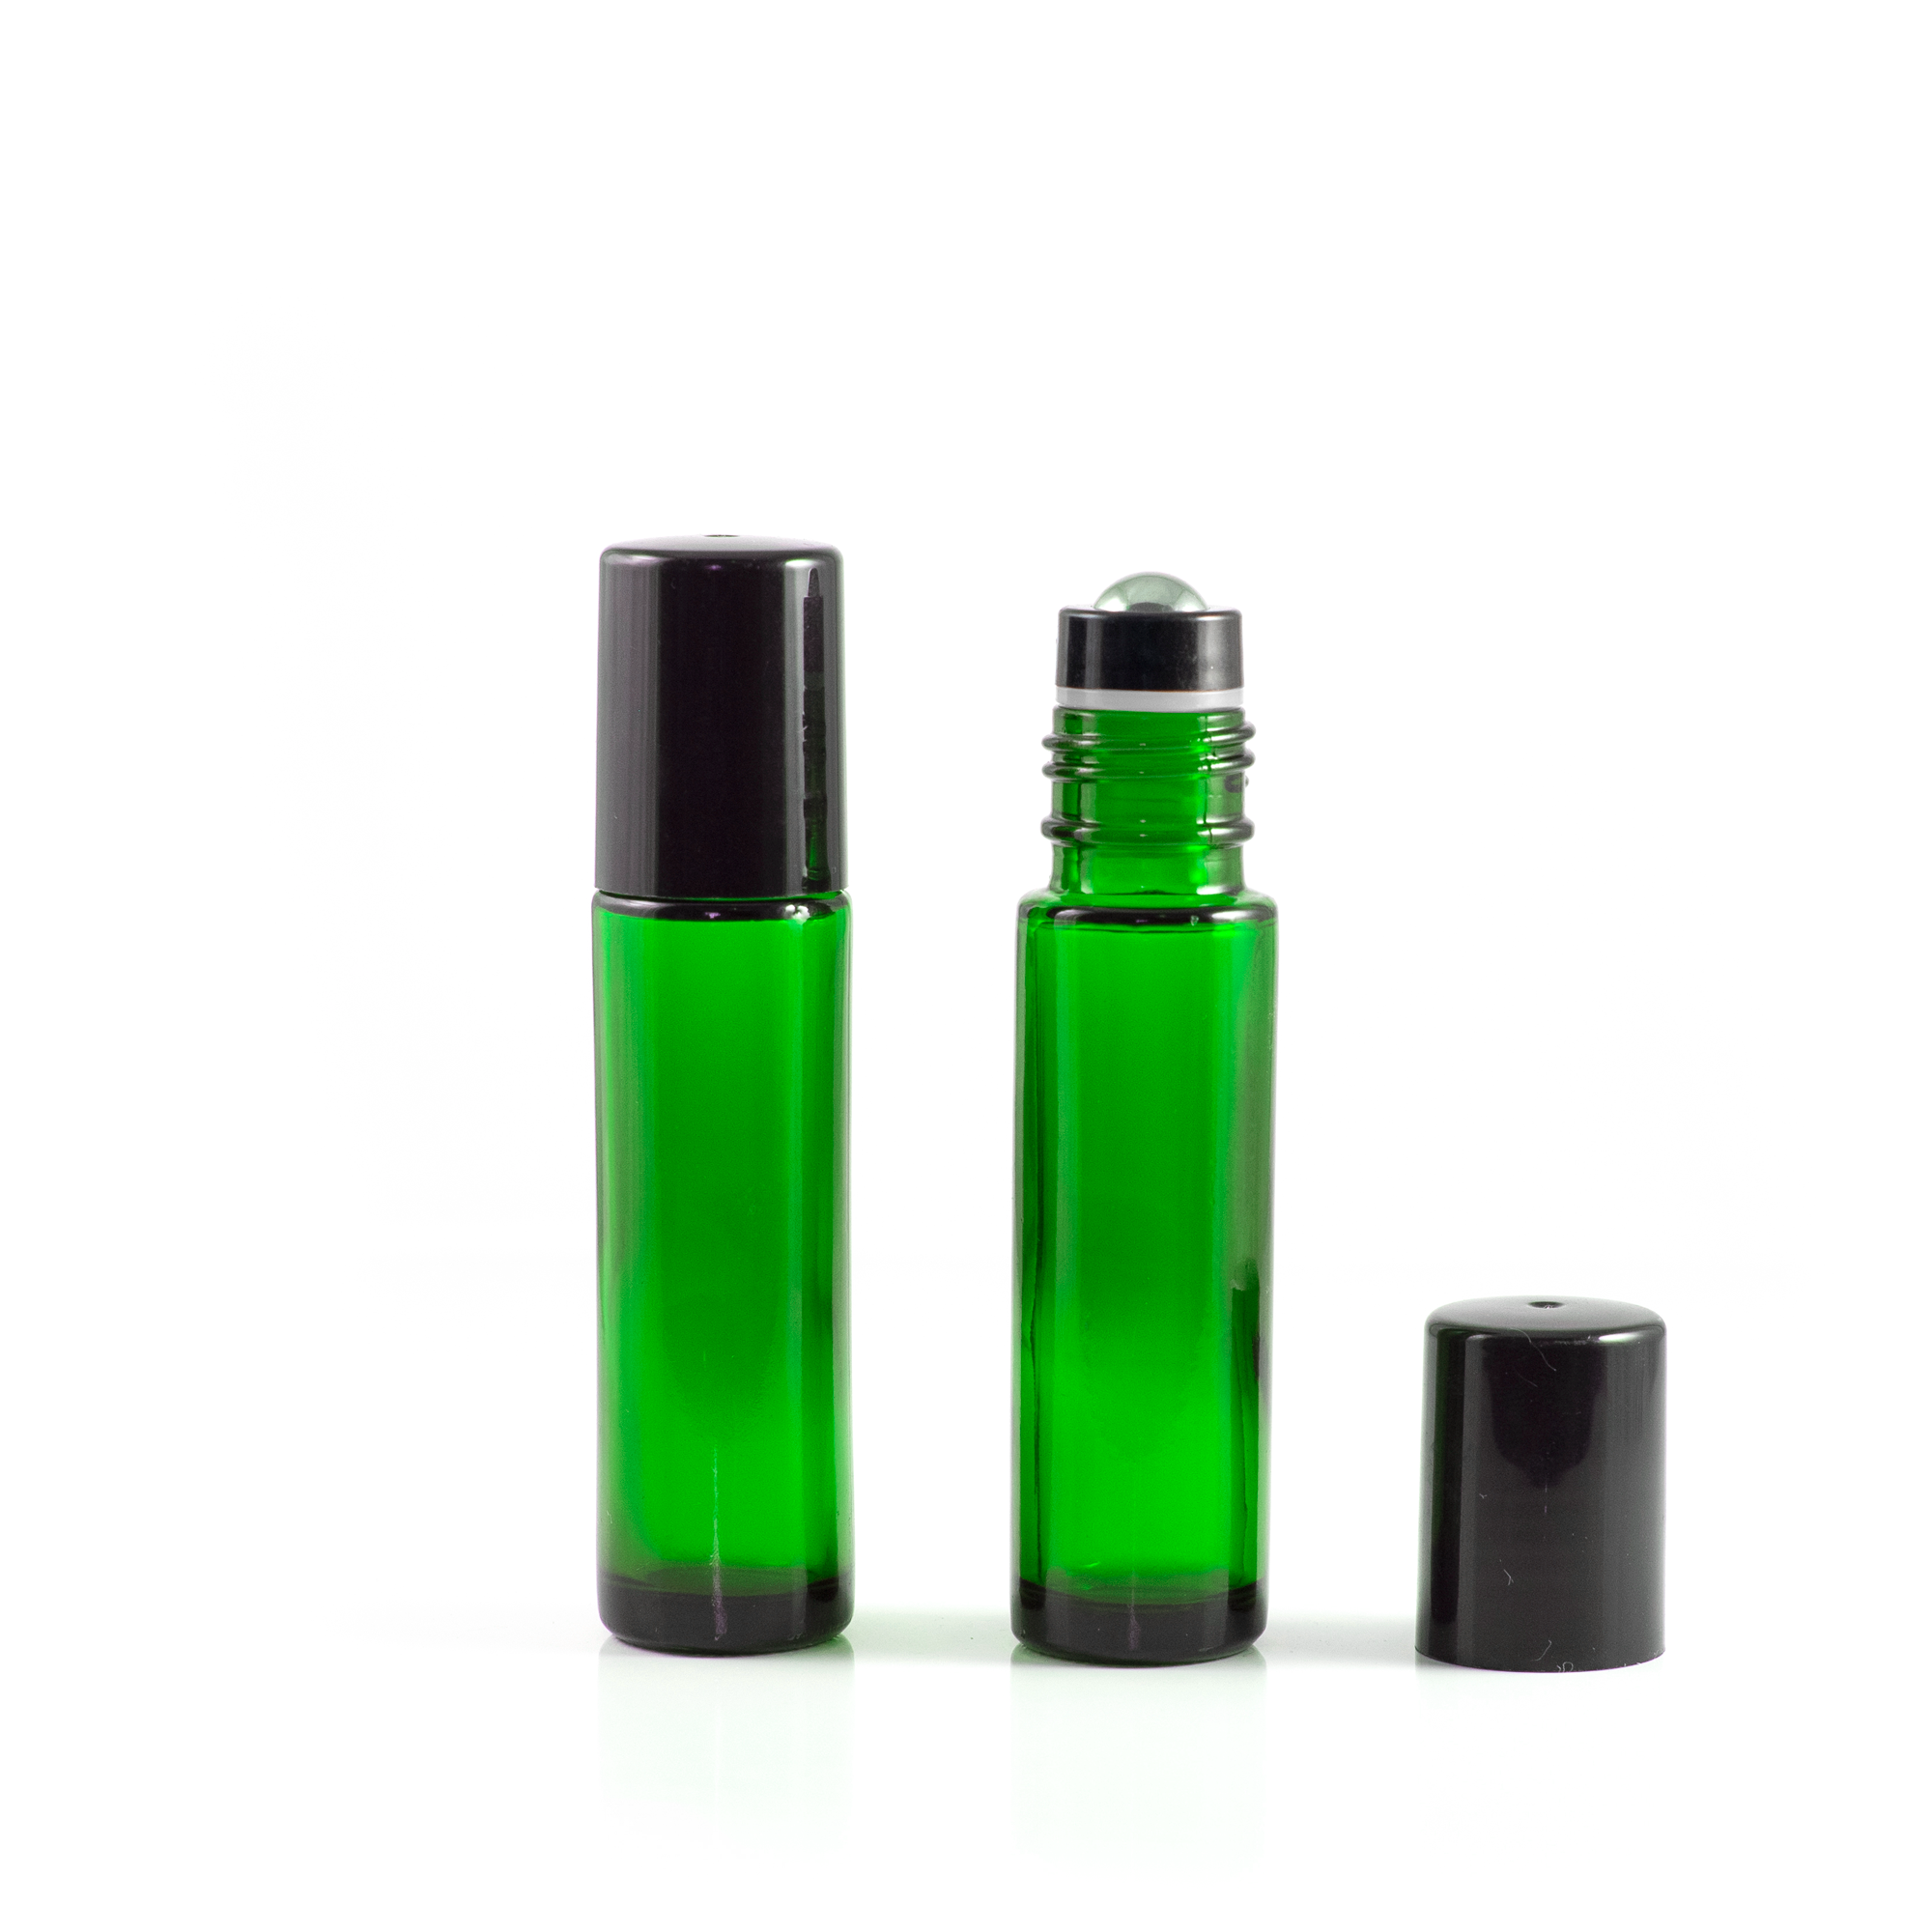 10ml butelka zielona z nasadką z kulką ze stali nierdzewnej oraz czarną nakrętką (5szt.)